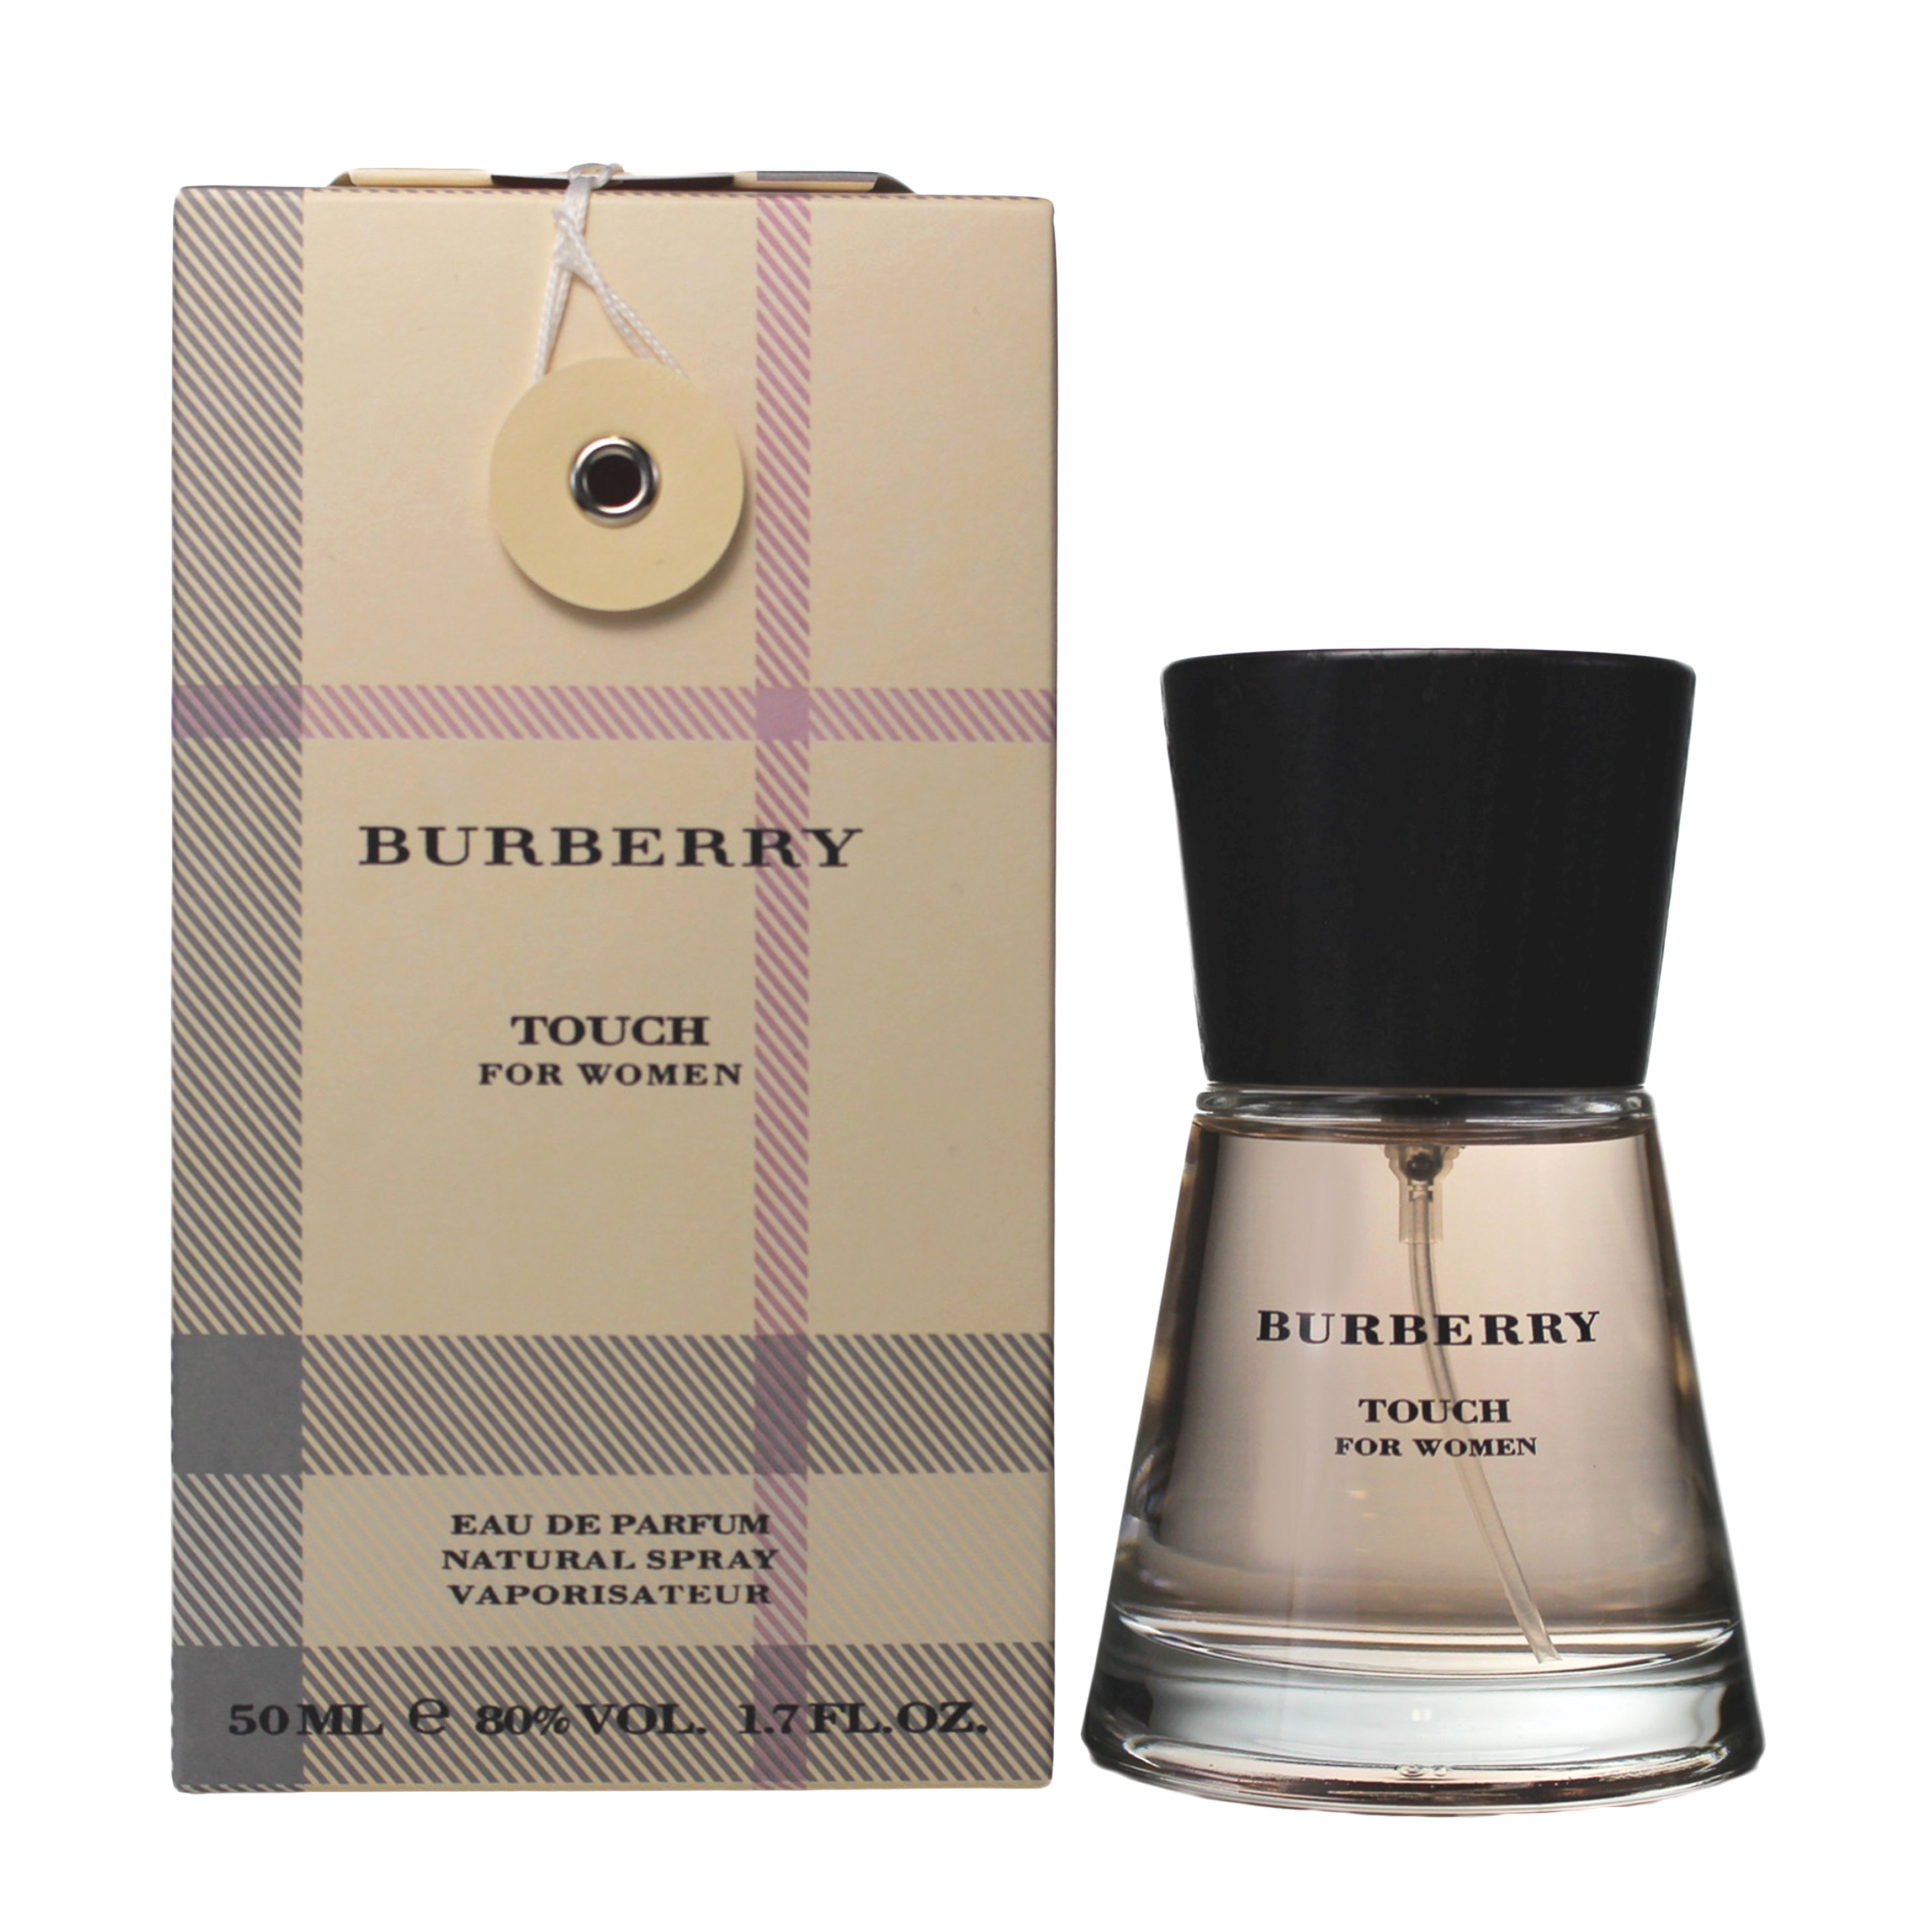 Burberry Perfume by Touch Parfum De Eau Burberry